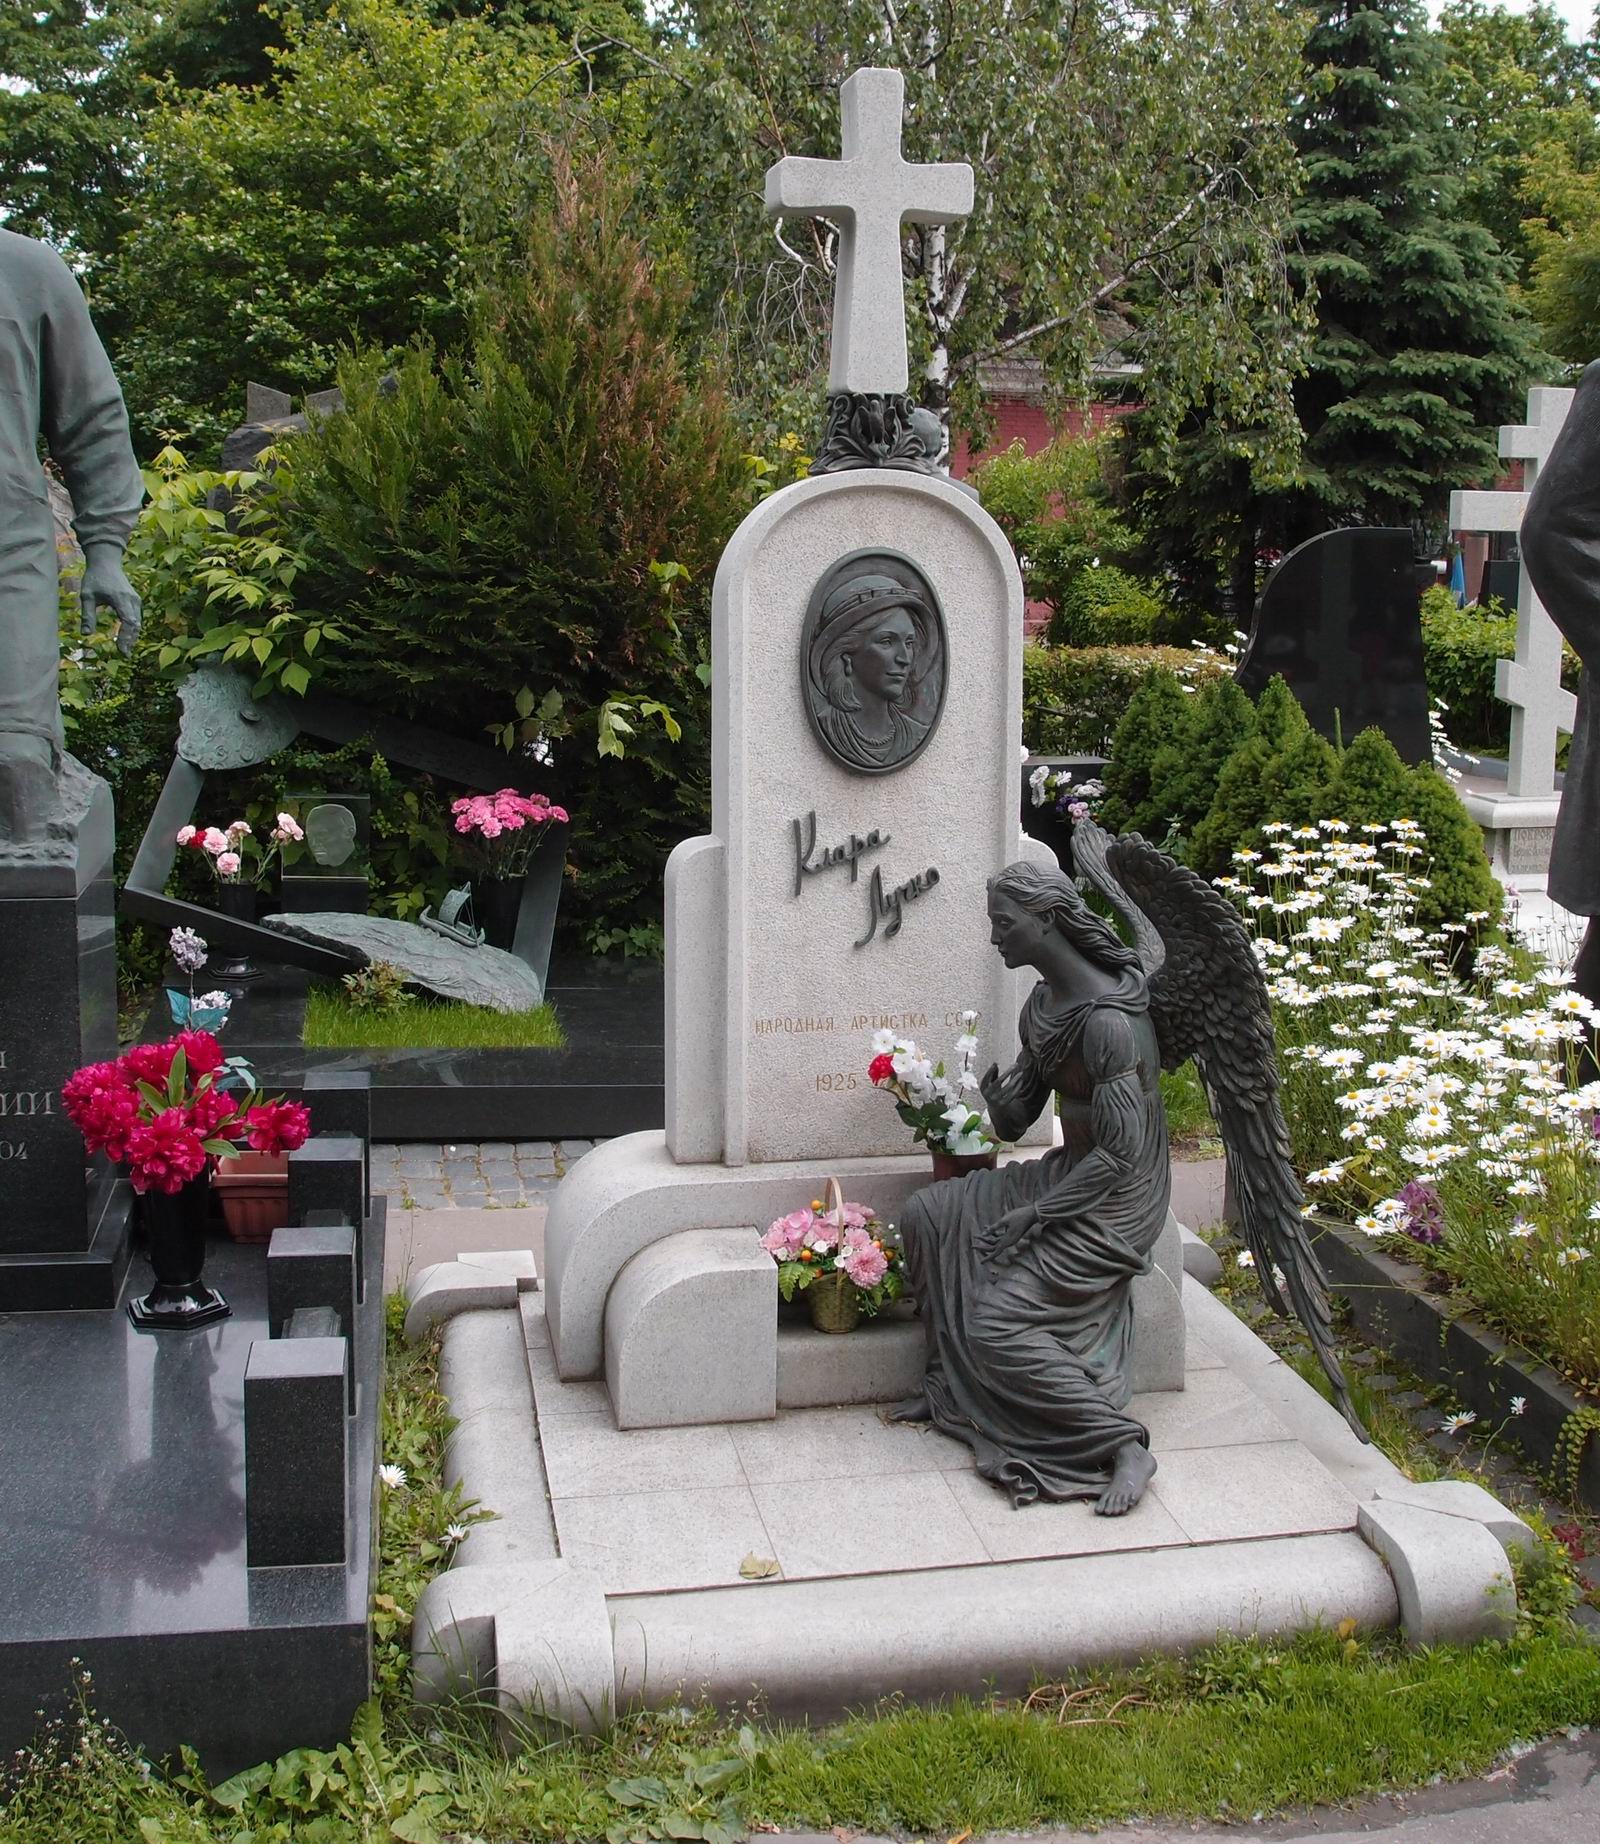 Памятник на могиле Лучко К.С. (1925–2005), ск. Д.Успенская, В.Шанов, на Новодевичьем кладбище (10–9–13). Нажмите левую кнопку мыши чтобы увидеть фрагмент памятника.